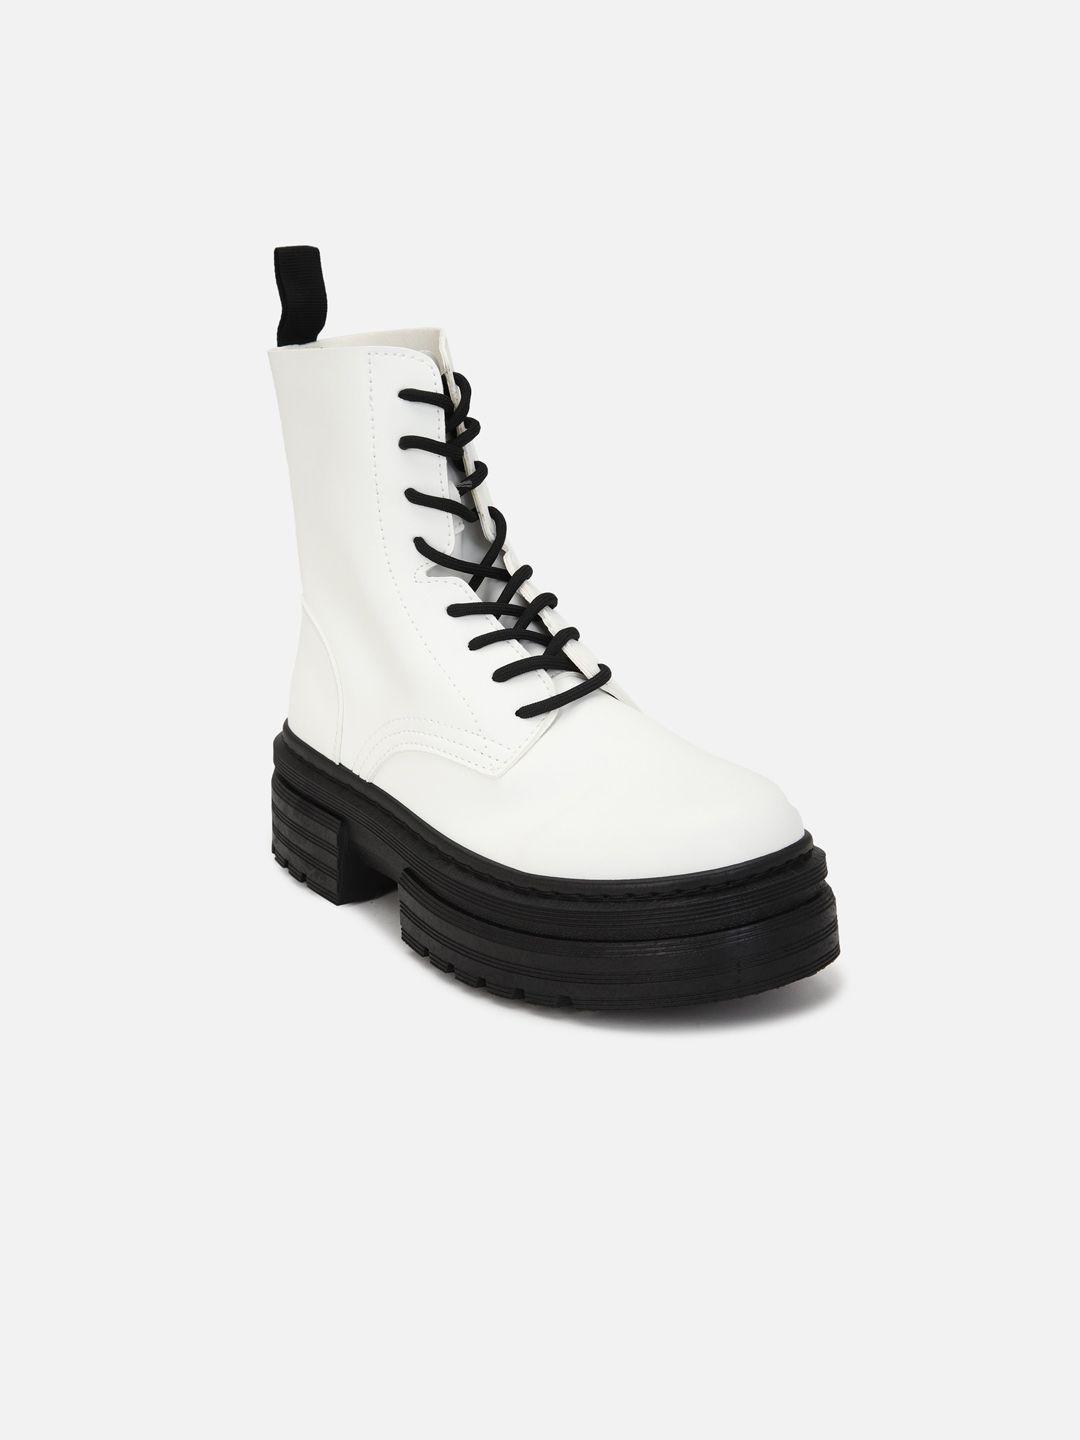 forever-21-women-white-&-black-solid-regular-boots